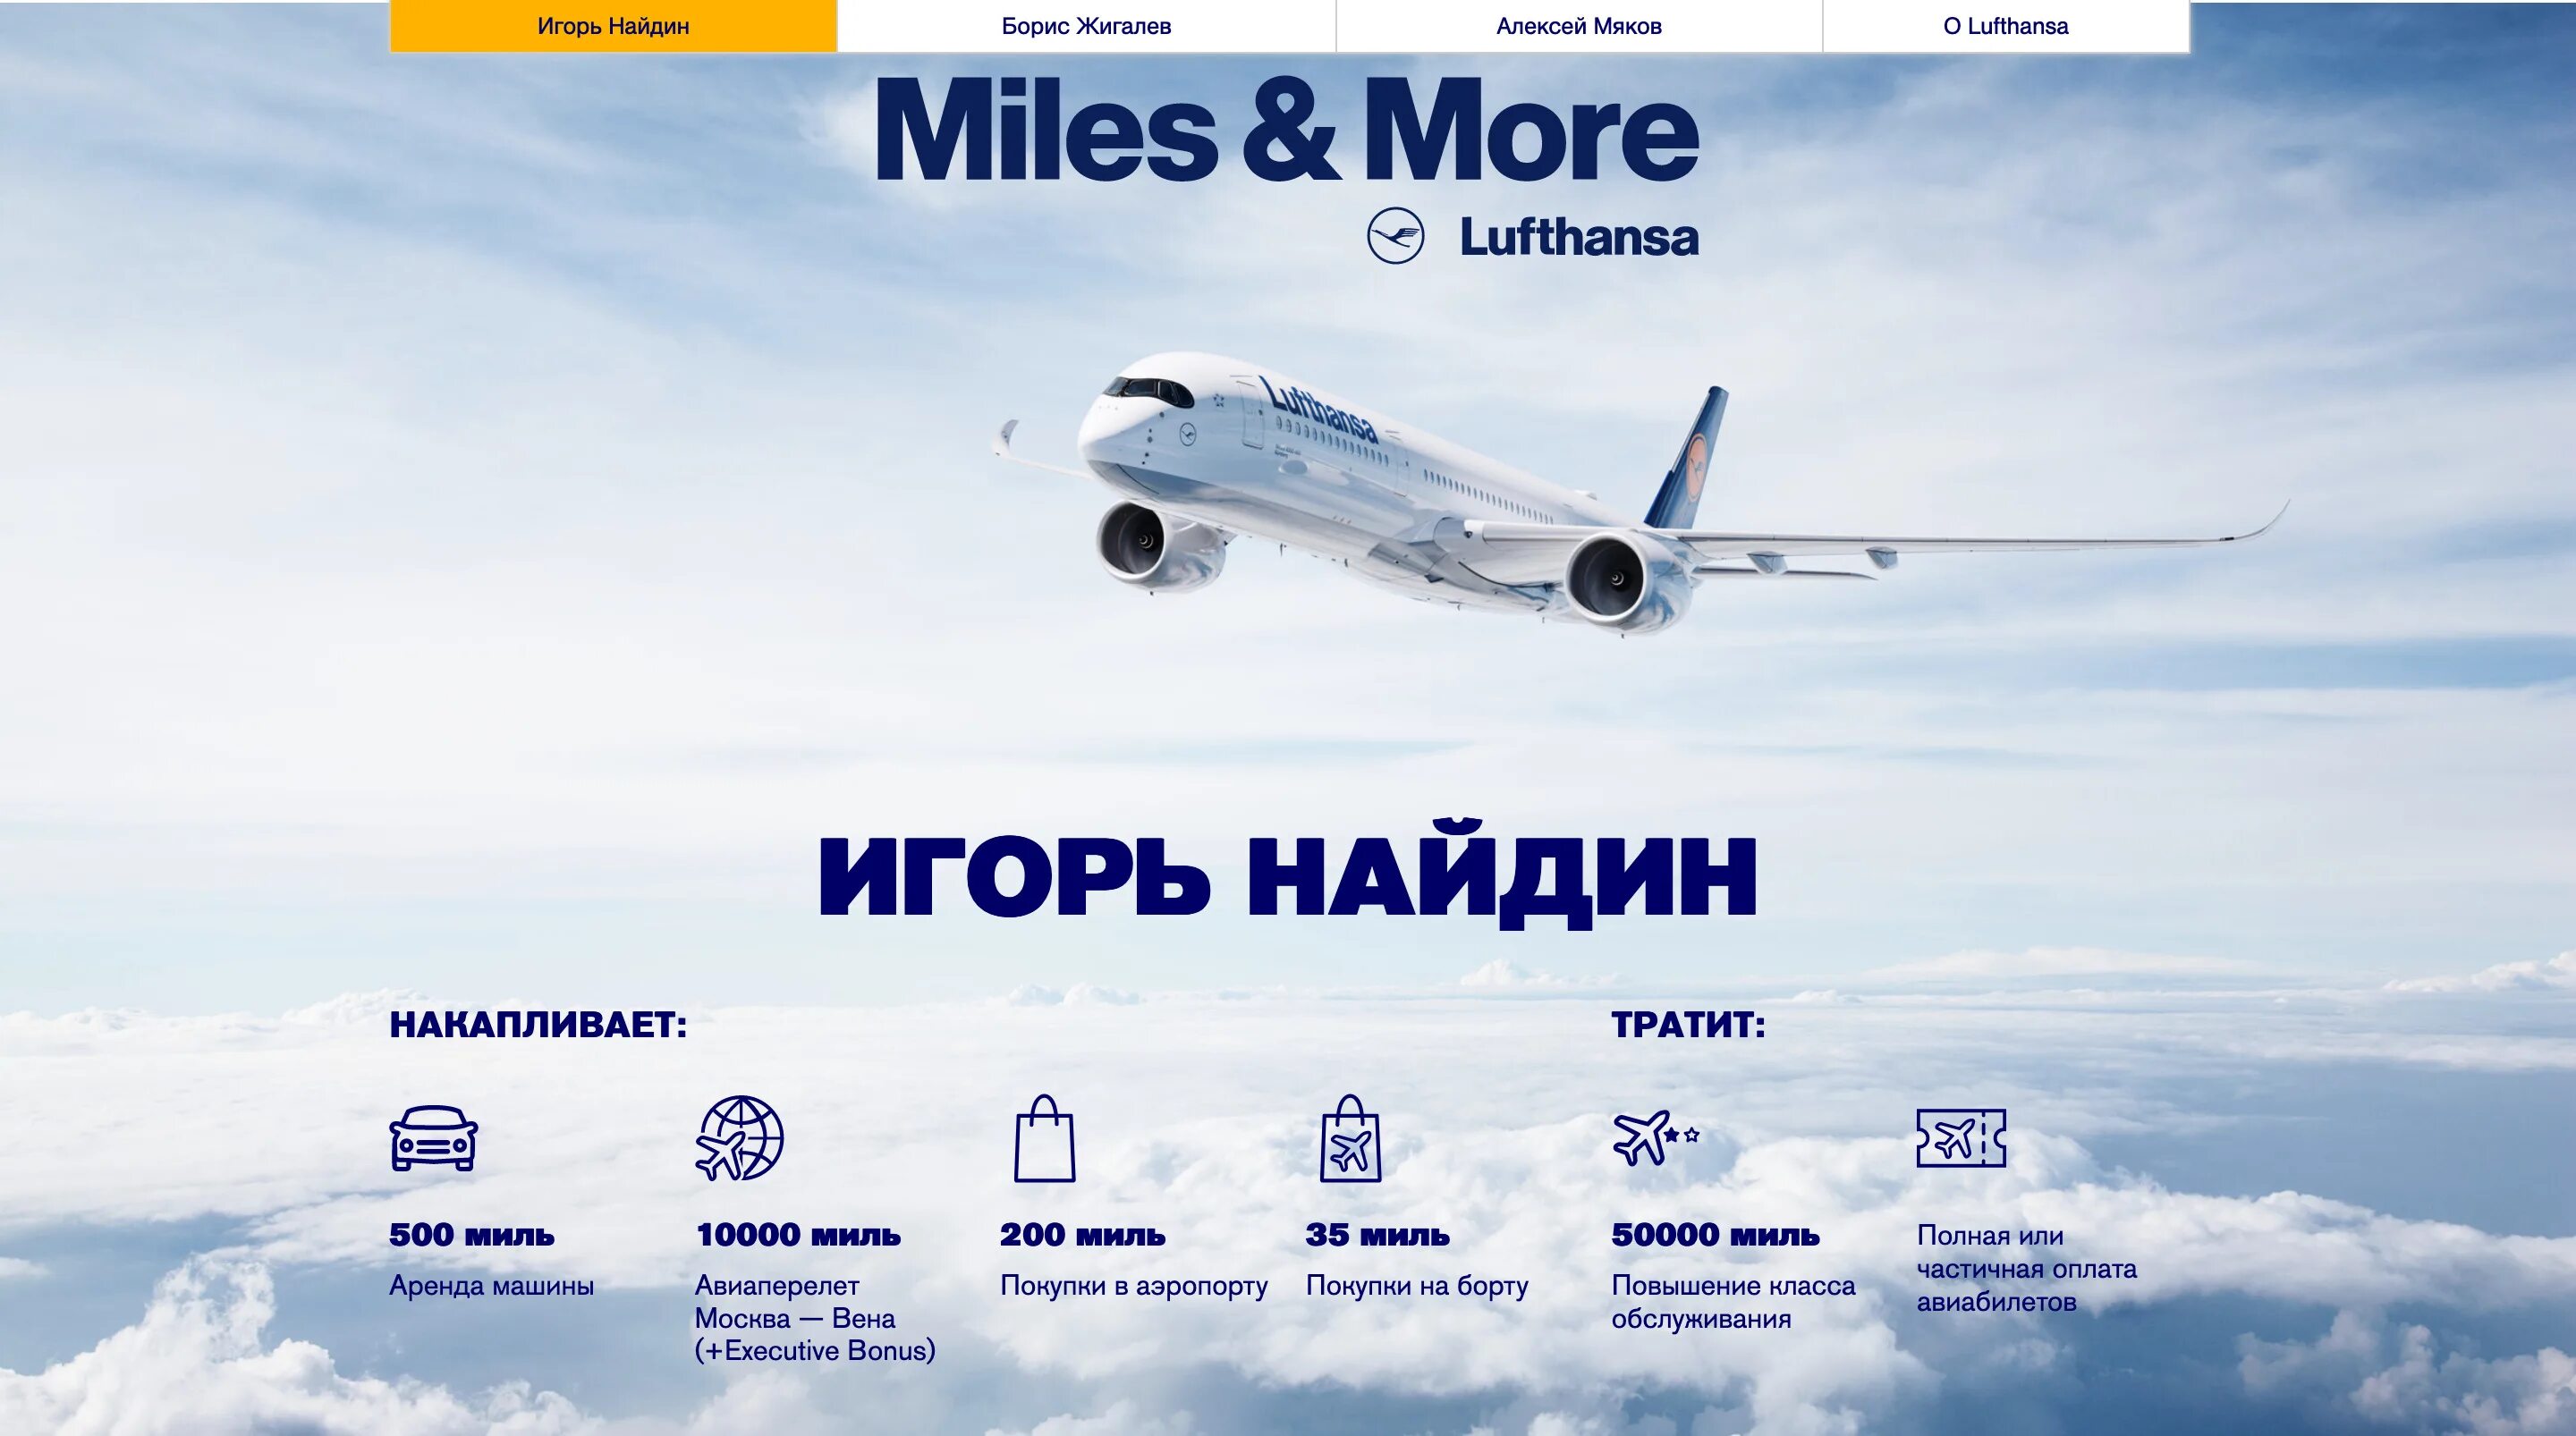 Авиабилеты купить люфтганза. Фирменный стиль авиакомпании «Люфтганза». Lufthansa маршрутная сеть. Карта авиакомпании Люфтганза. Люфтганза купить авиабилеты.